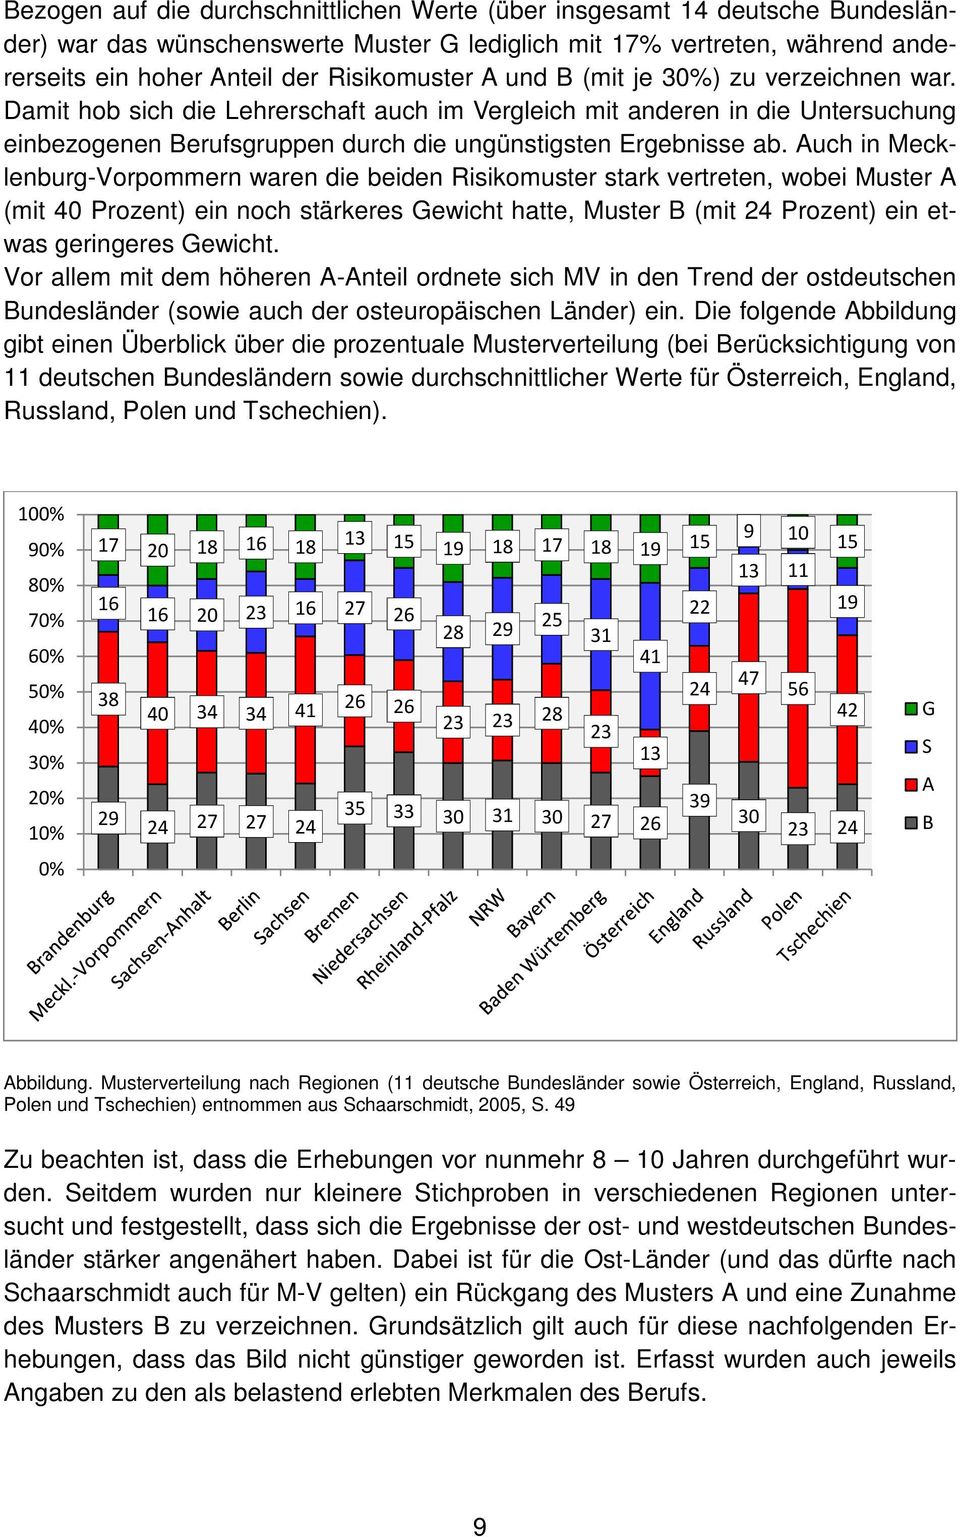 Auch in Mecklenburg-Vorpommern waren die beiden Risikomuster stark vertreten, wobei Muster A (mit 40 Prozent) ein noch stärkeres Gewicht hatte, Muster B (mit 24 Prozent) ein etwas geringeres Gewicht.